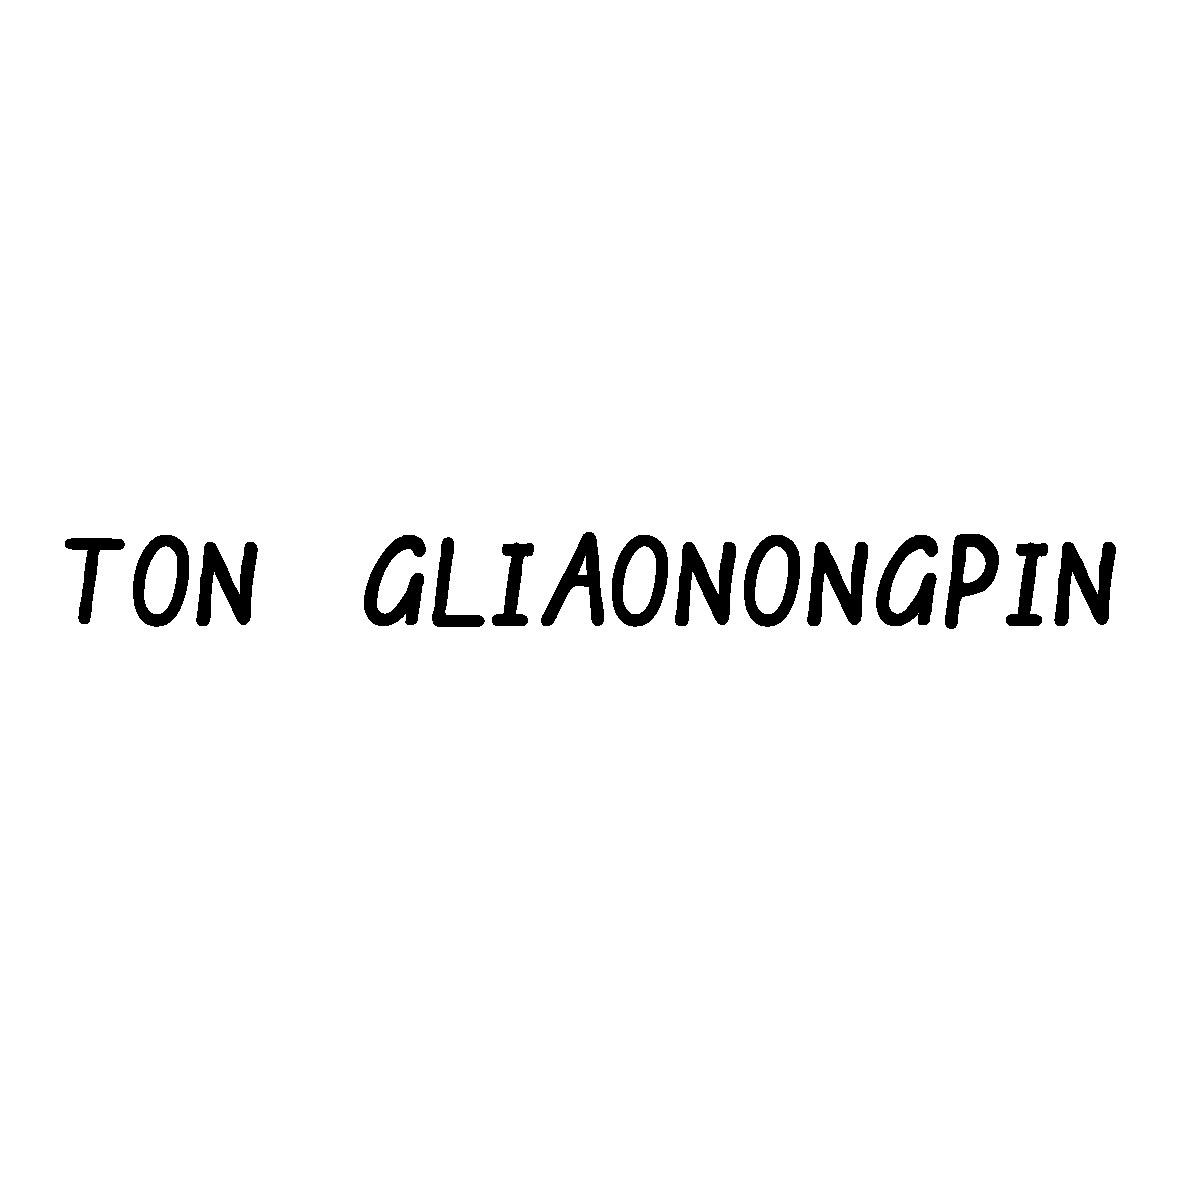 TON GLIAONONGPIN